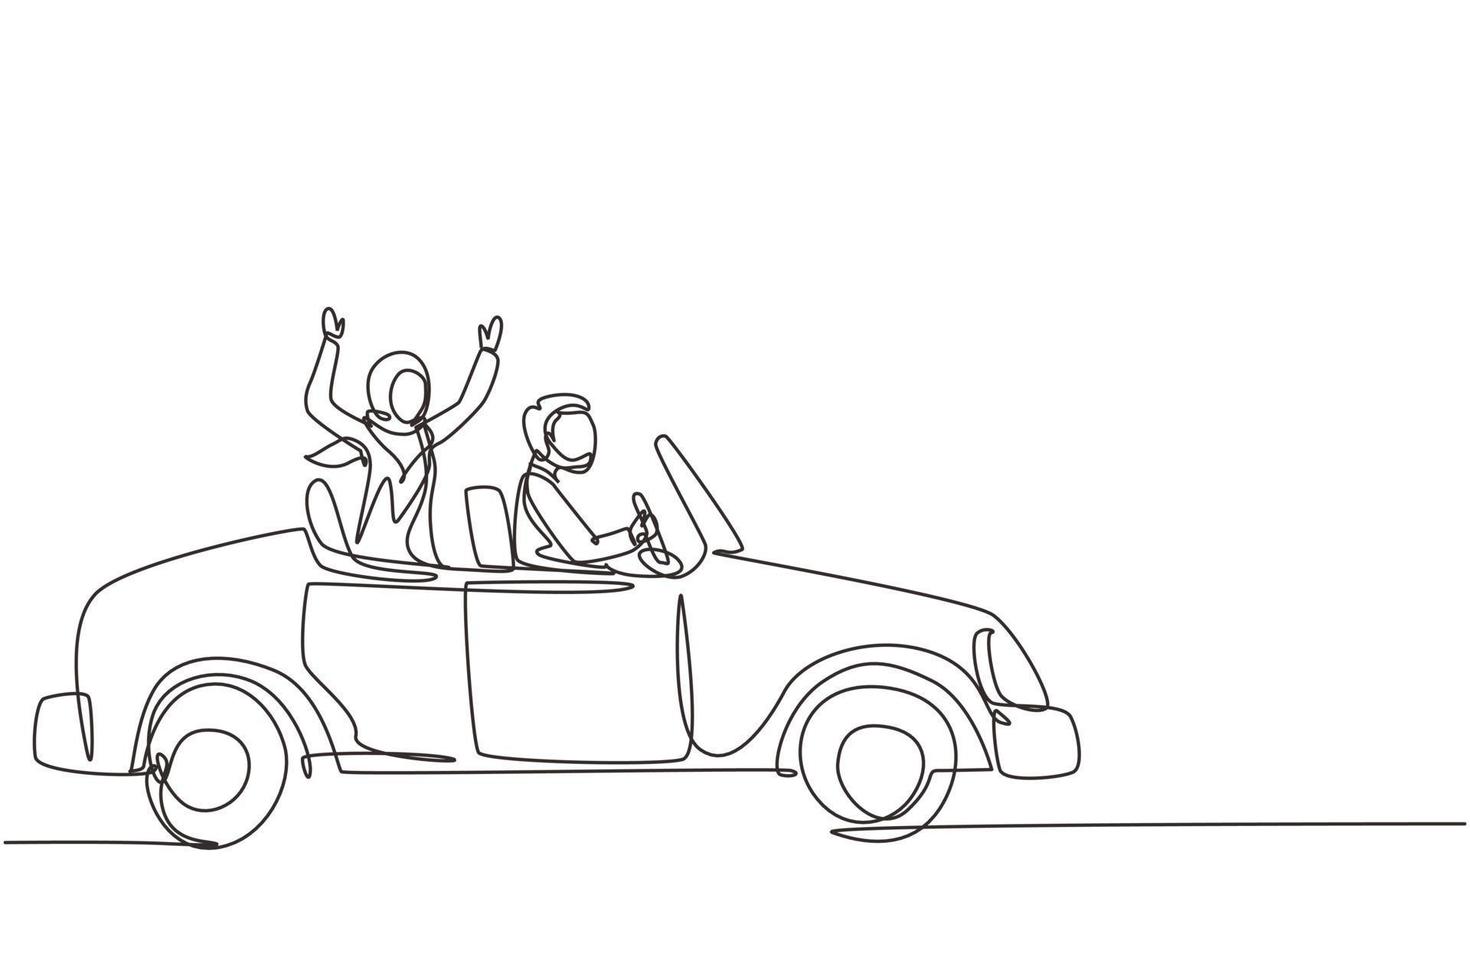 kontinuerlig en rad ritning nygifta arabiska paret brudgum i fordon. glad man och kvinna som åker bröllopsbil. gift par romantiskt förhållande. enda linje design vektorgrafisk illustration vektor